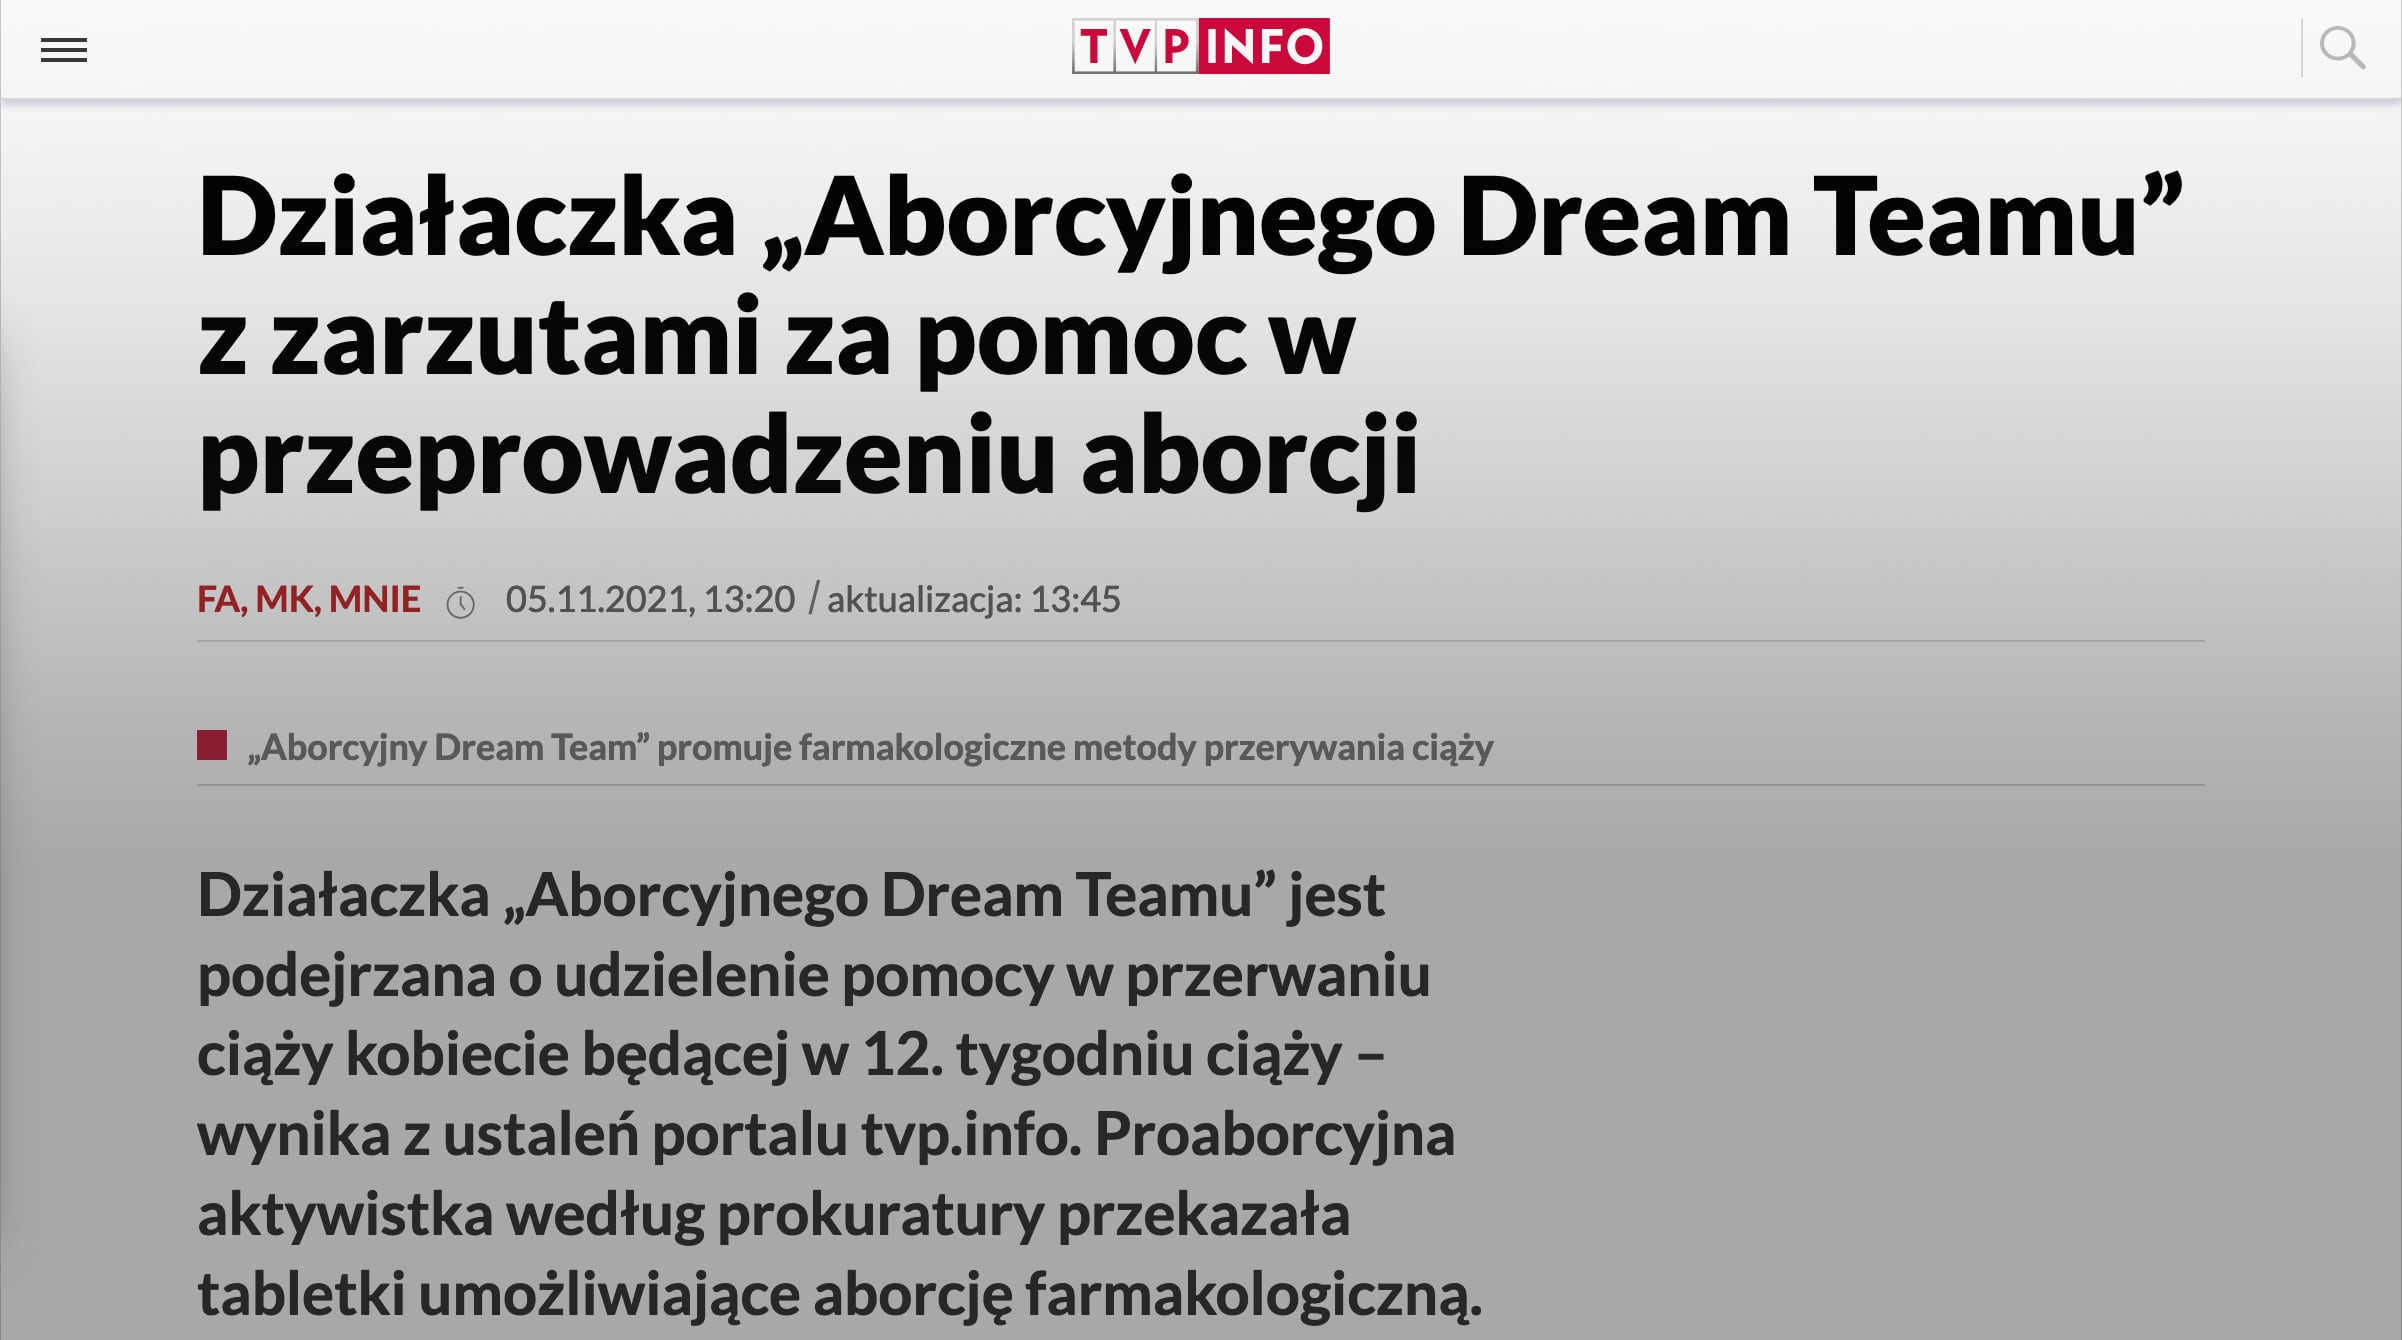 Screen ze strony tvp.info z nagłówiem - Działaczka „Aborcyjnego Dream Teamu” z zarzutami za pomoc w przeprowadzeniu aborcji.